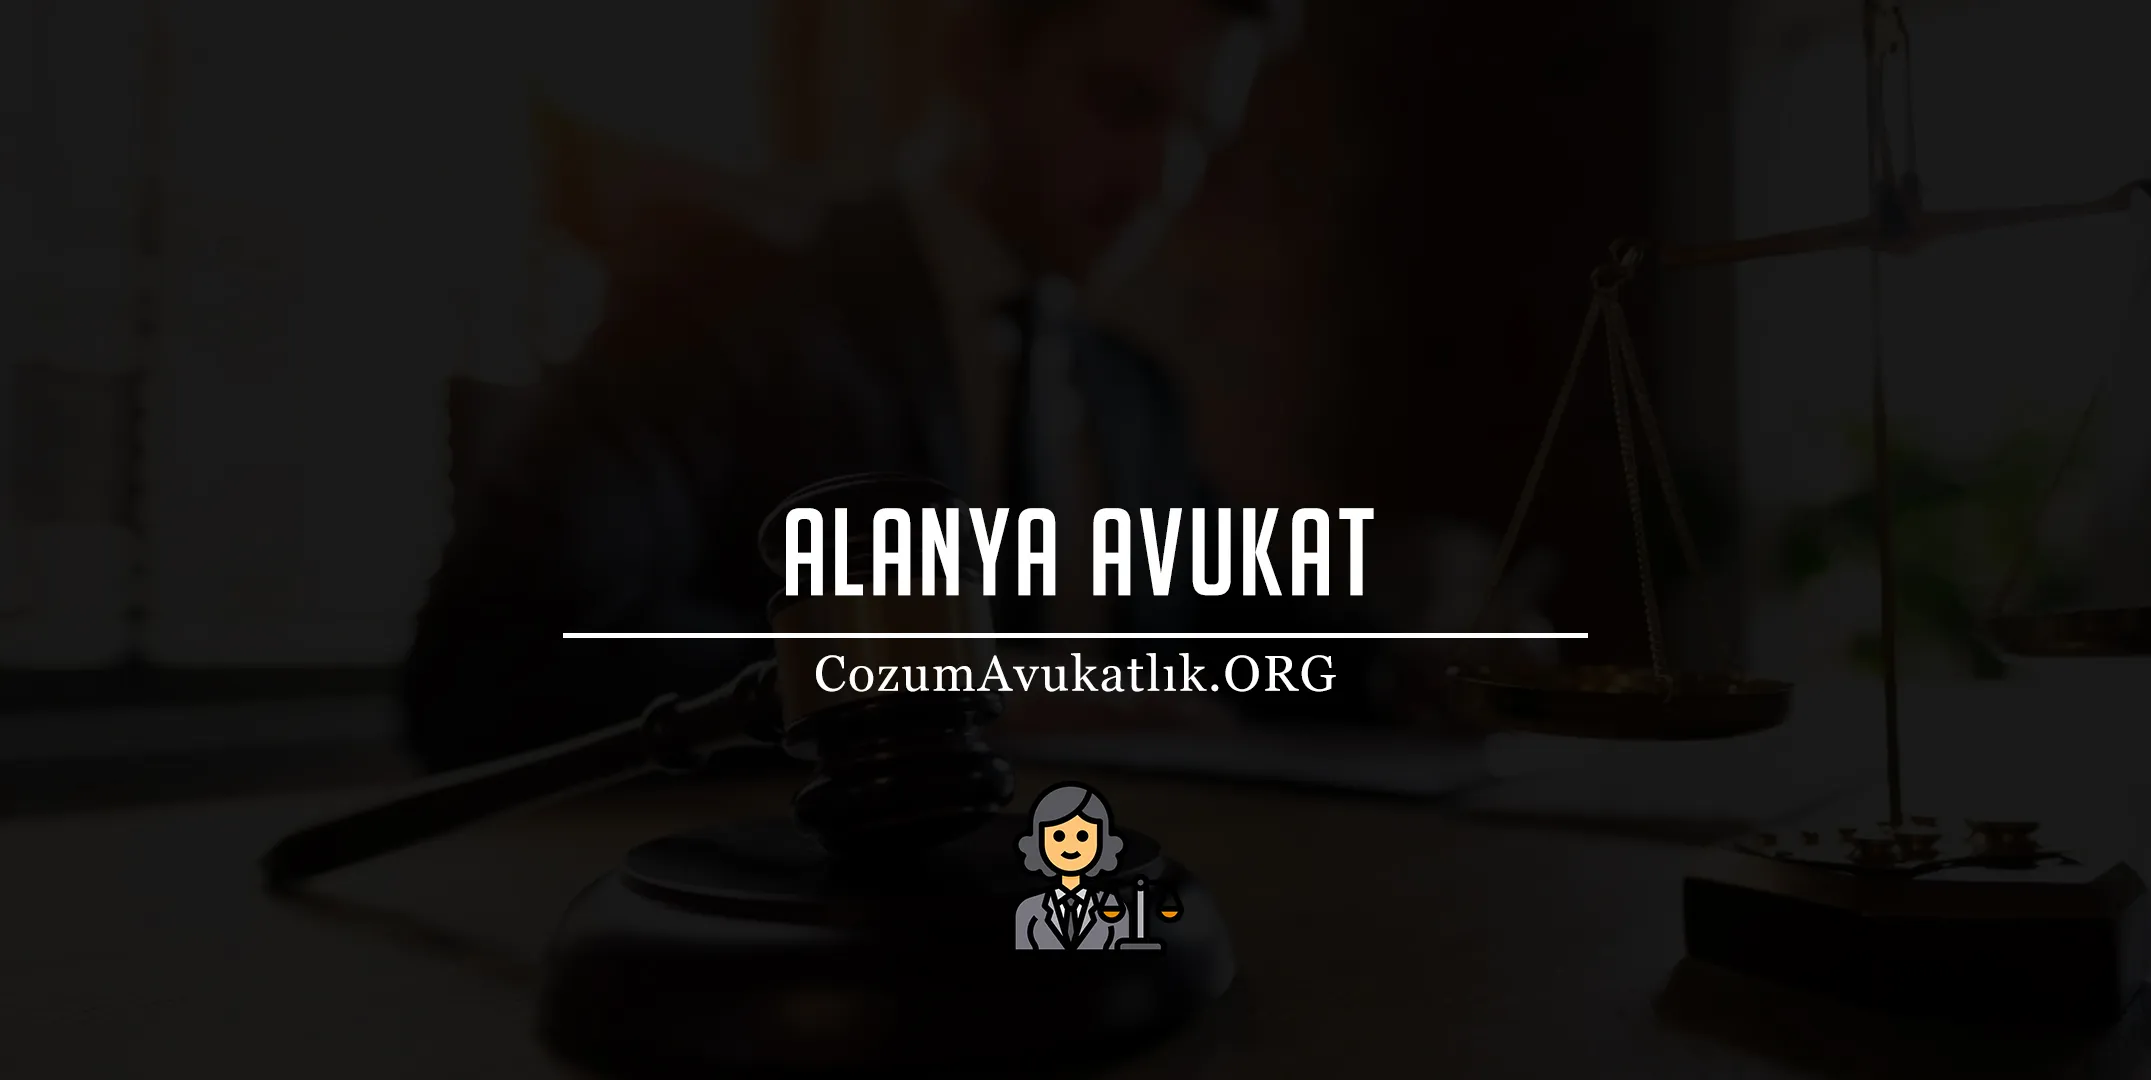 Alanya Avukat